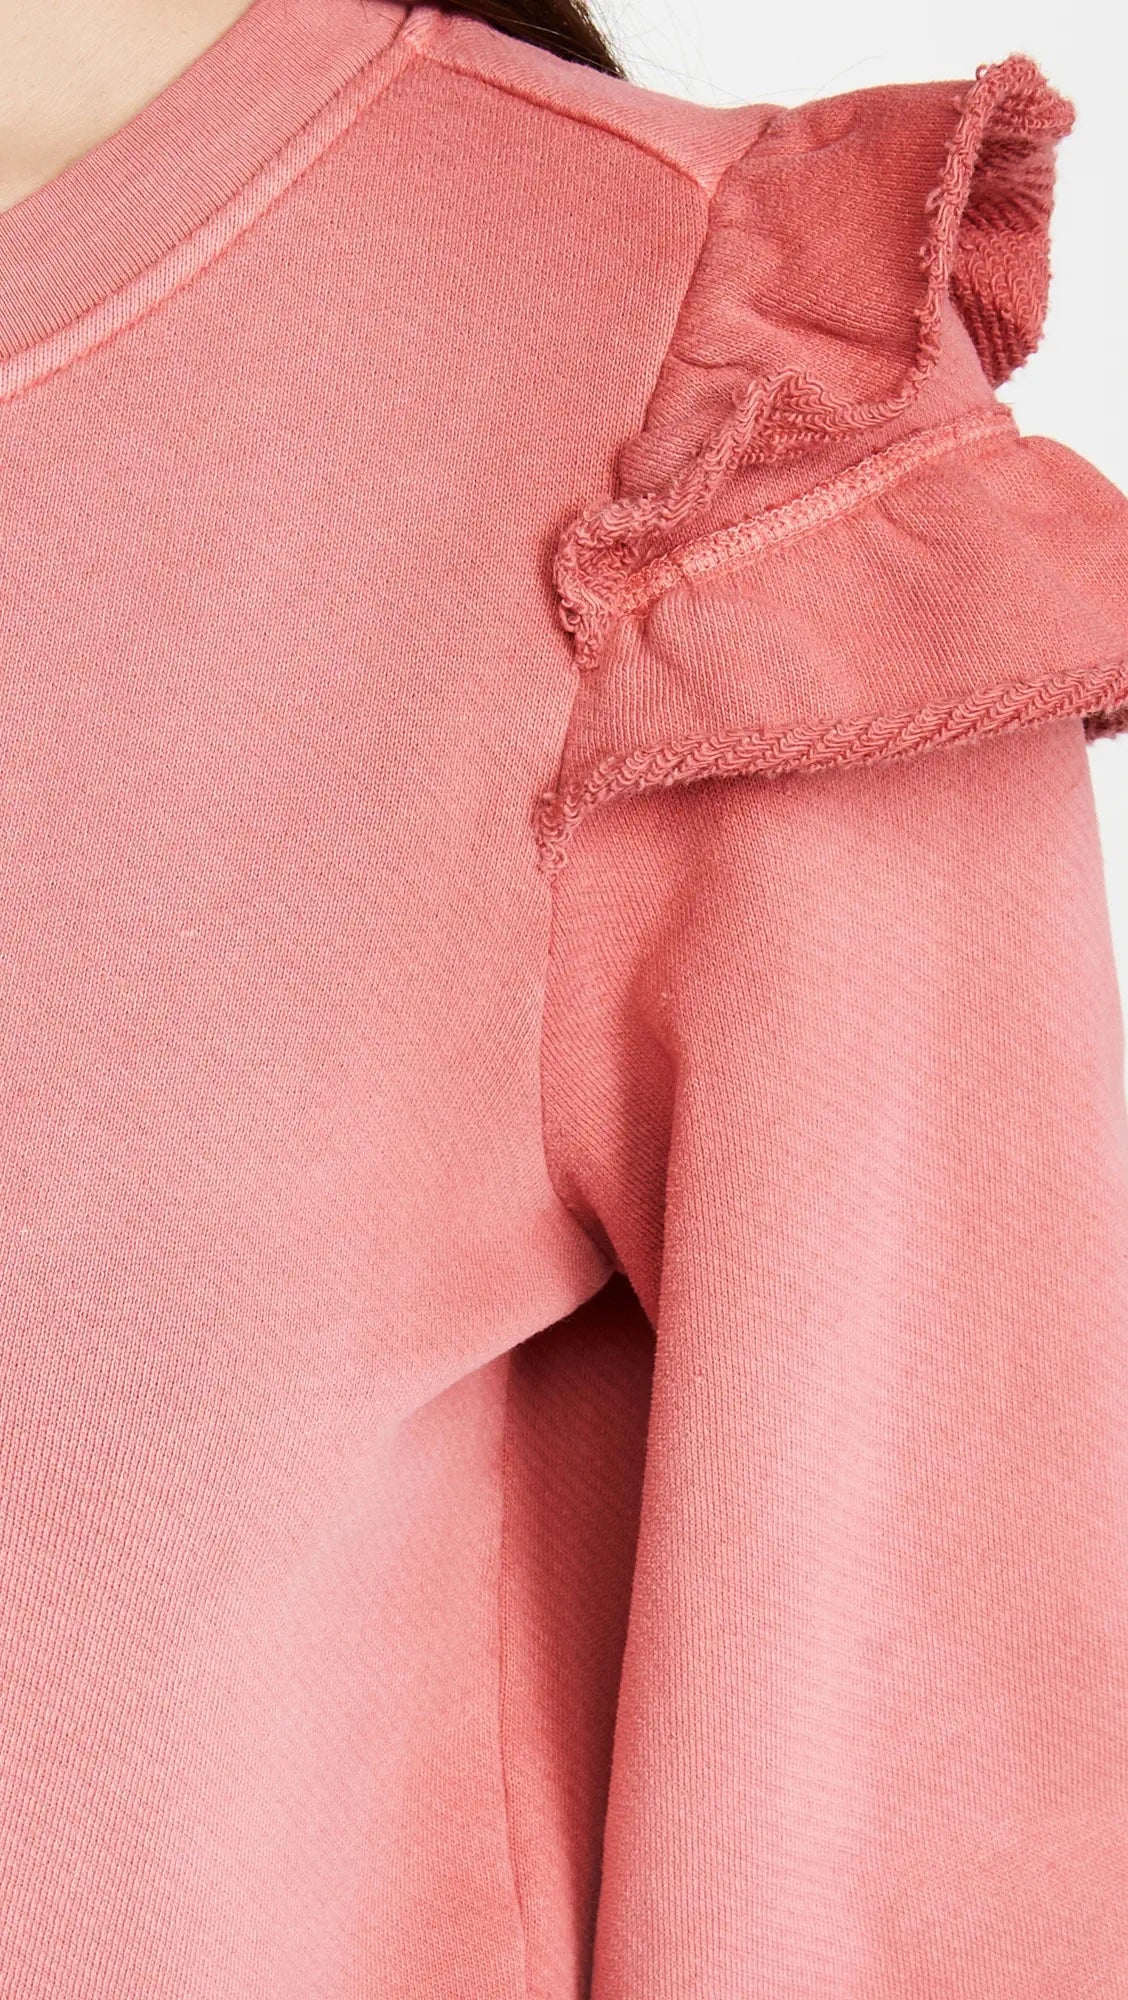 Paige Long Sleeve Panelo Sweatshirt - /Pink - XS